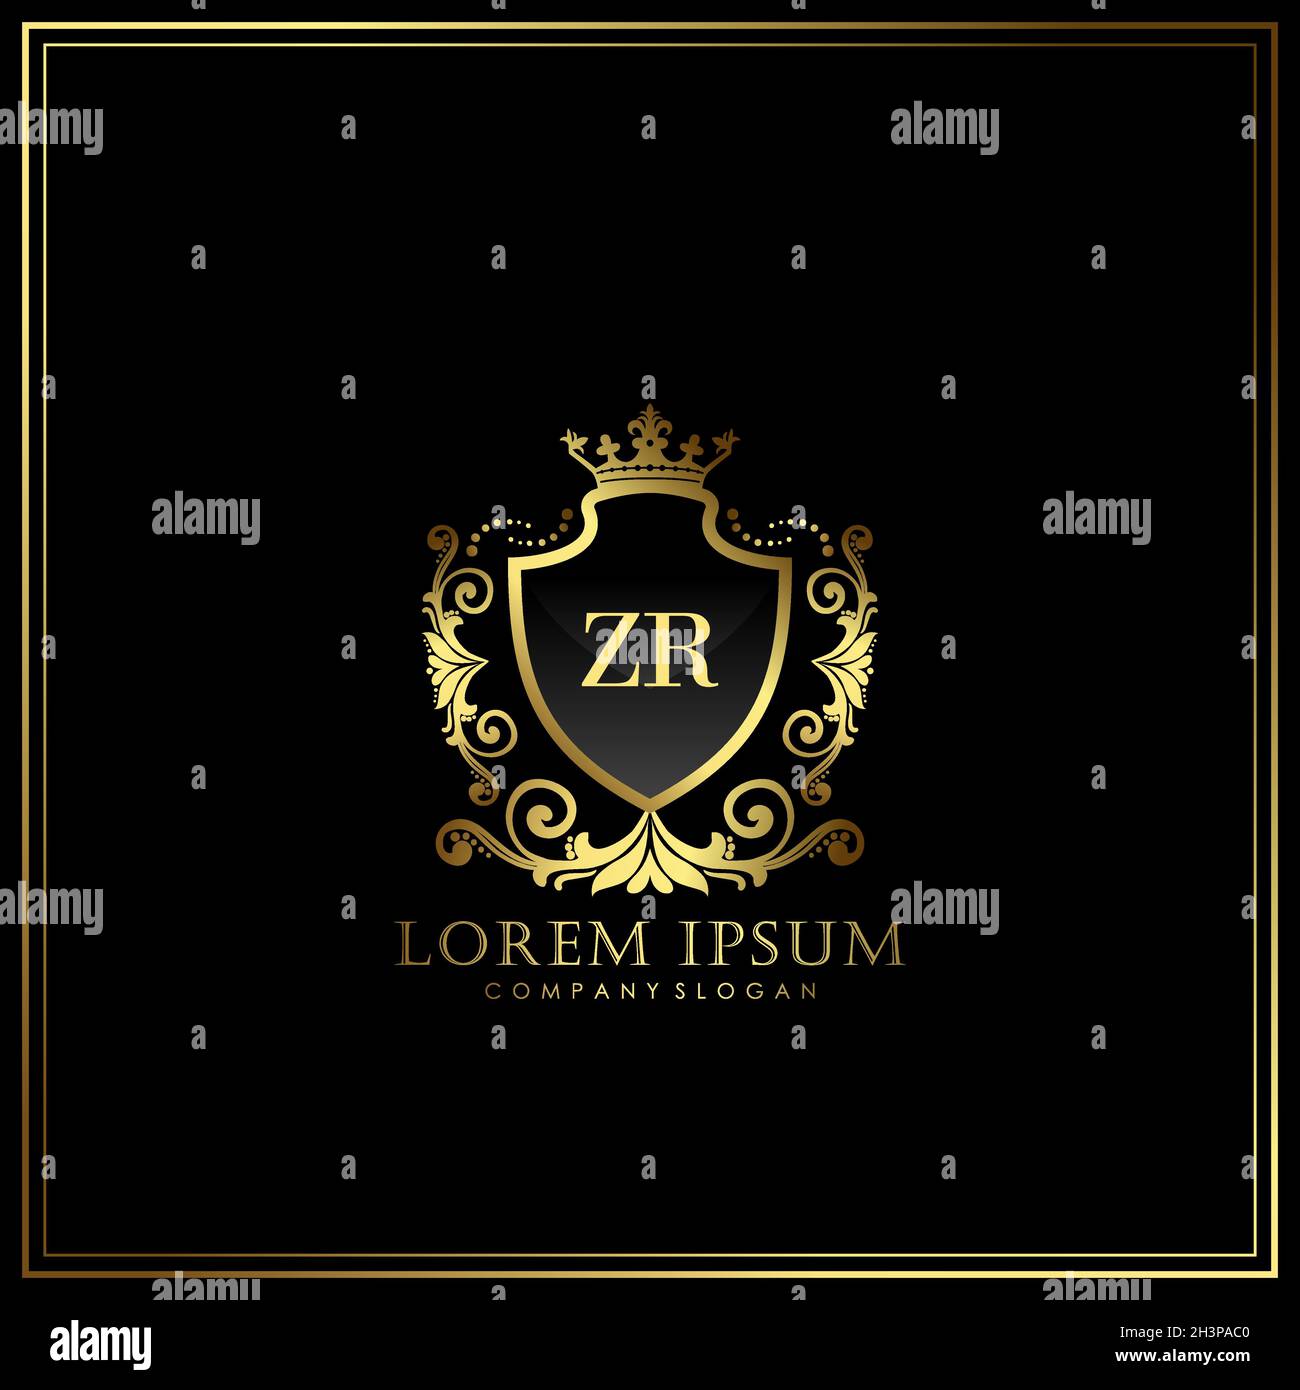 ZR Initial Letter Luxury Logo Vorlage in Vektor für Restaurant, Royalty, Boutique, Cafe, Hotel, Wappentisch, Schmuck, Mode und andere Vektorgrafik Stock Vektor